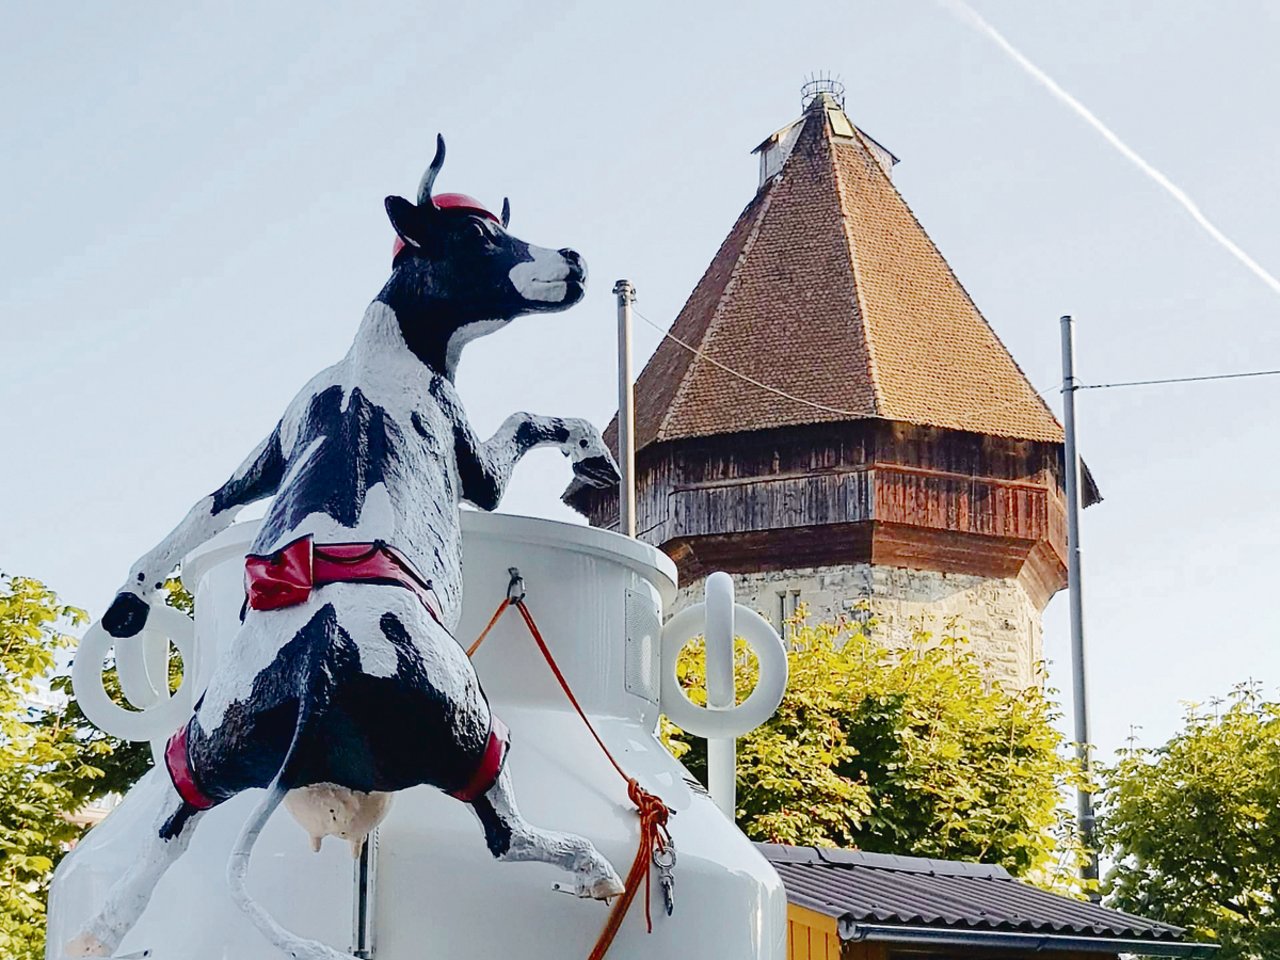 Kühe in Luzern: Bauern brachten Tiere – auch lebendige – in die Stadt, um mit Konsumenten ins Gespräch zu kommen. (Bilder Franziska Jurt)